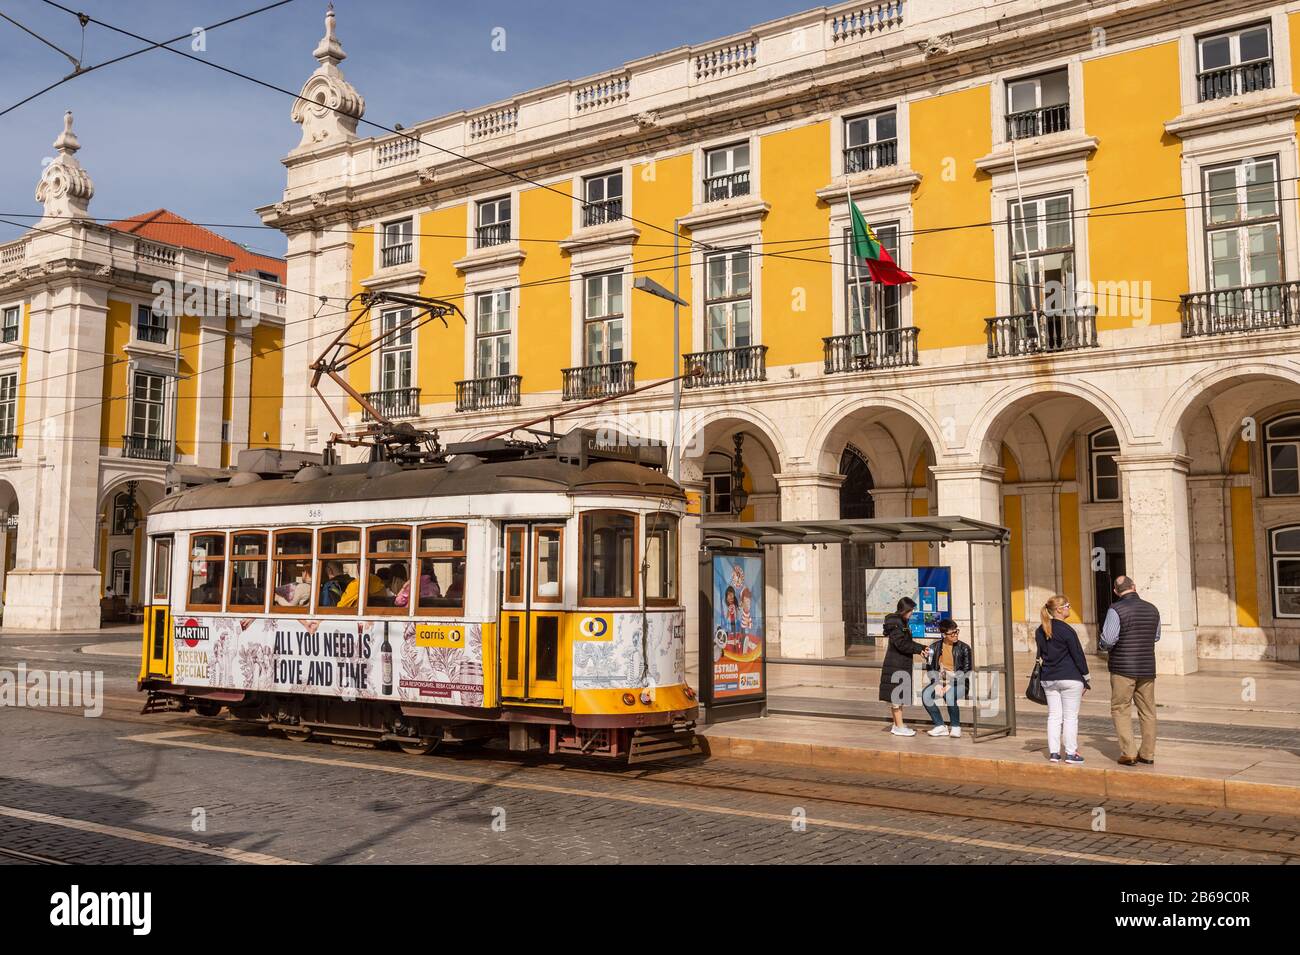 Lisbonne, Portugal - 2 mars 2020: Célèbre tramway jaune 28 à la Praca do Comercio Banque D'Images